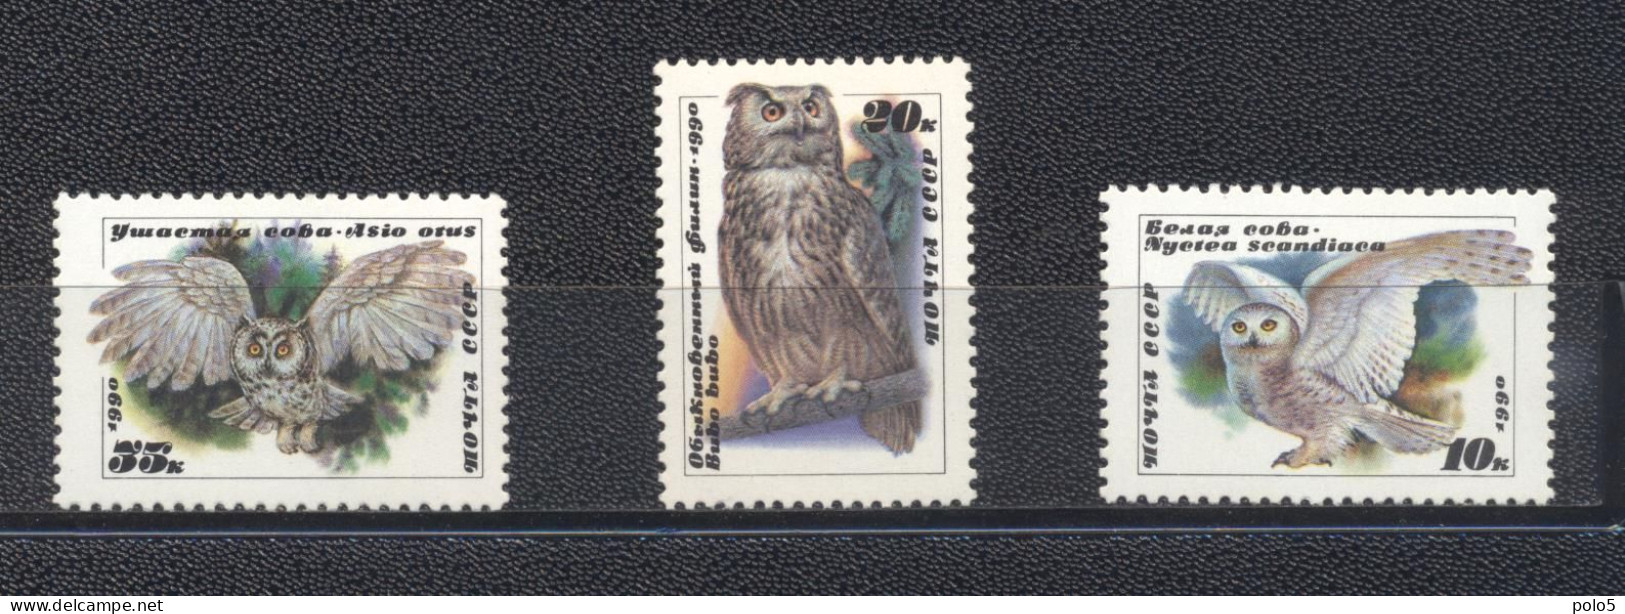 URSS 1990-Owls Set (3v) - Unused Stamps